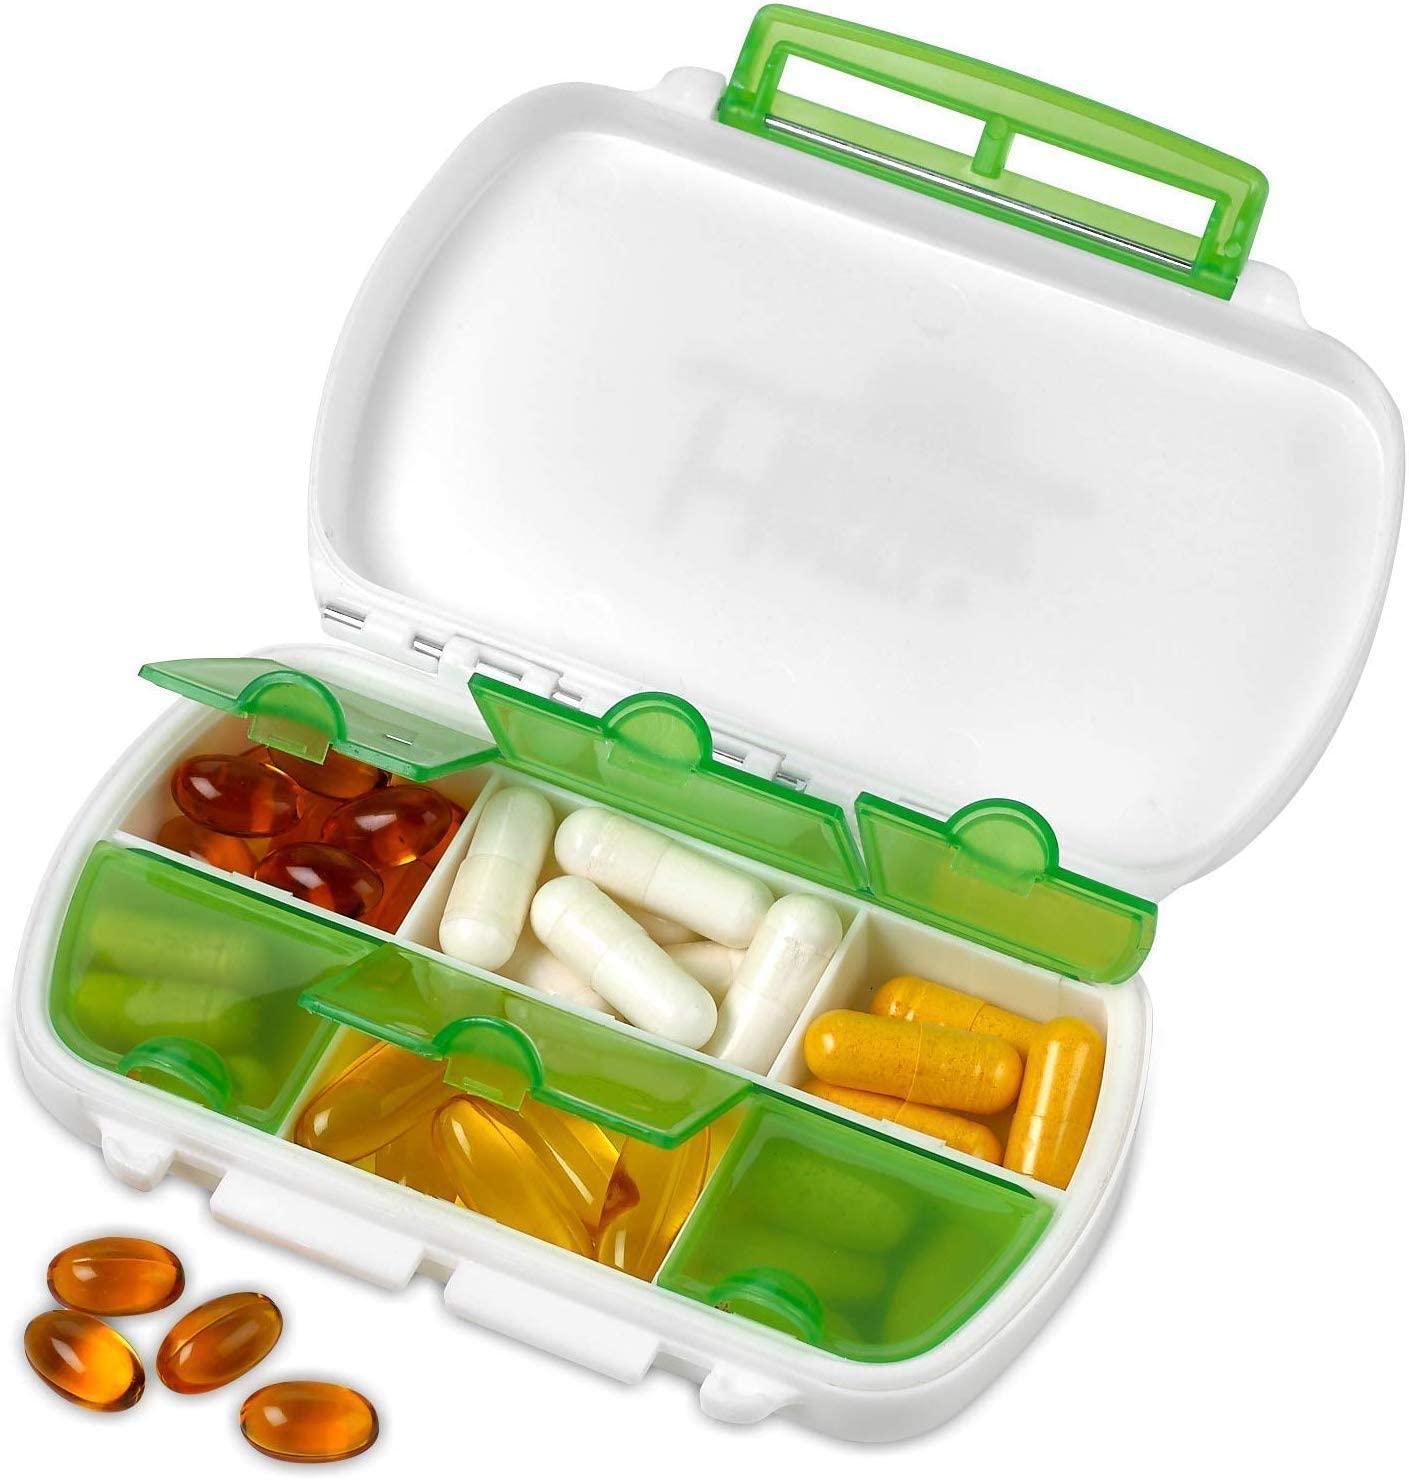 7 Day Pill Box Organizer Weekly Medicine Storage Container Vitamins Travel Case